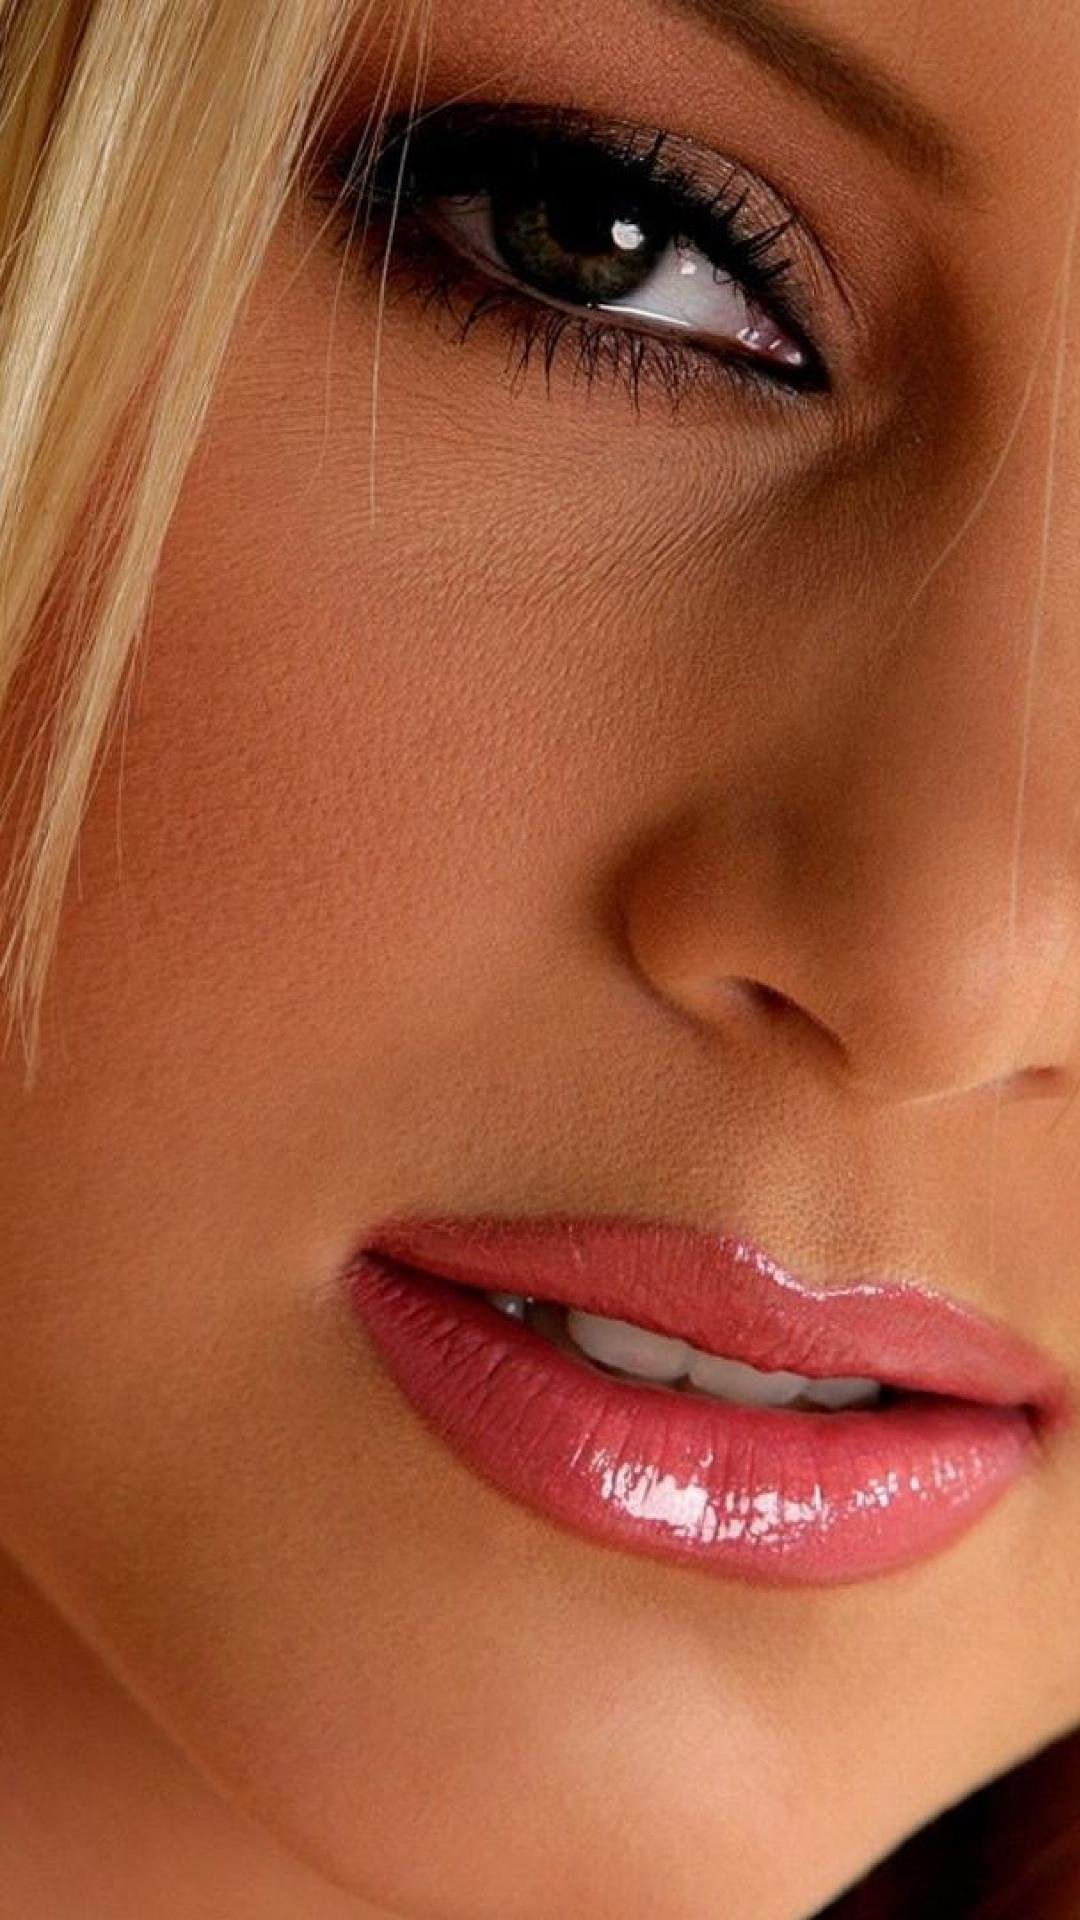 Красивая киска девушки крупным планом. Лейси Харт. Красивые губы. Губы девушки. Красивые женские губы.